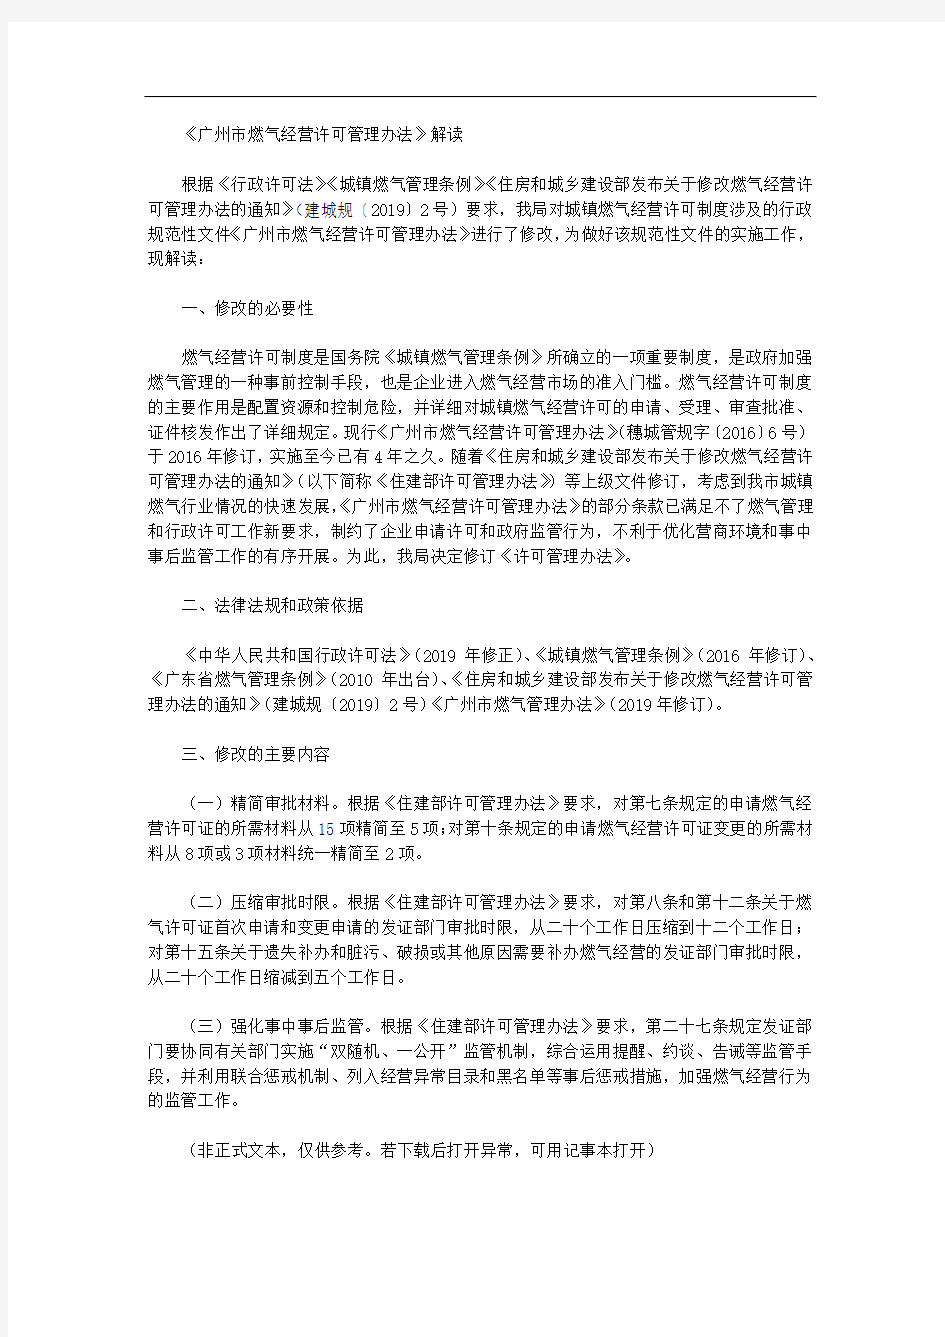 《广州市燃气经营许可管理办法》解读